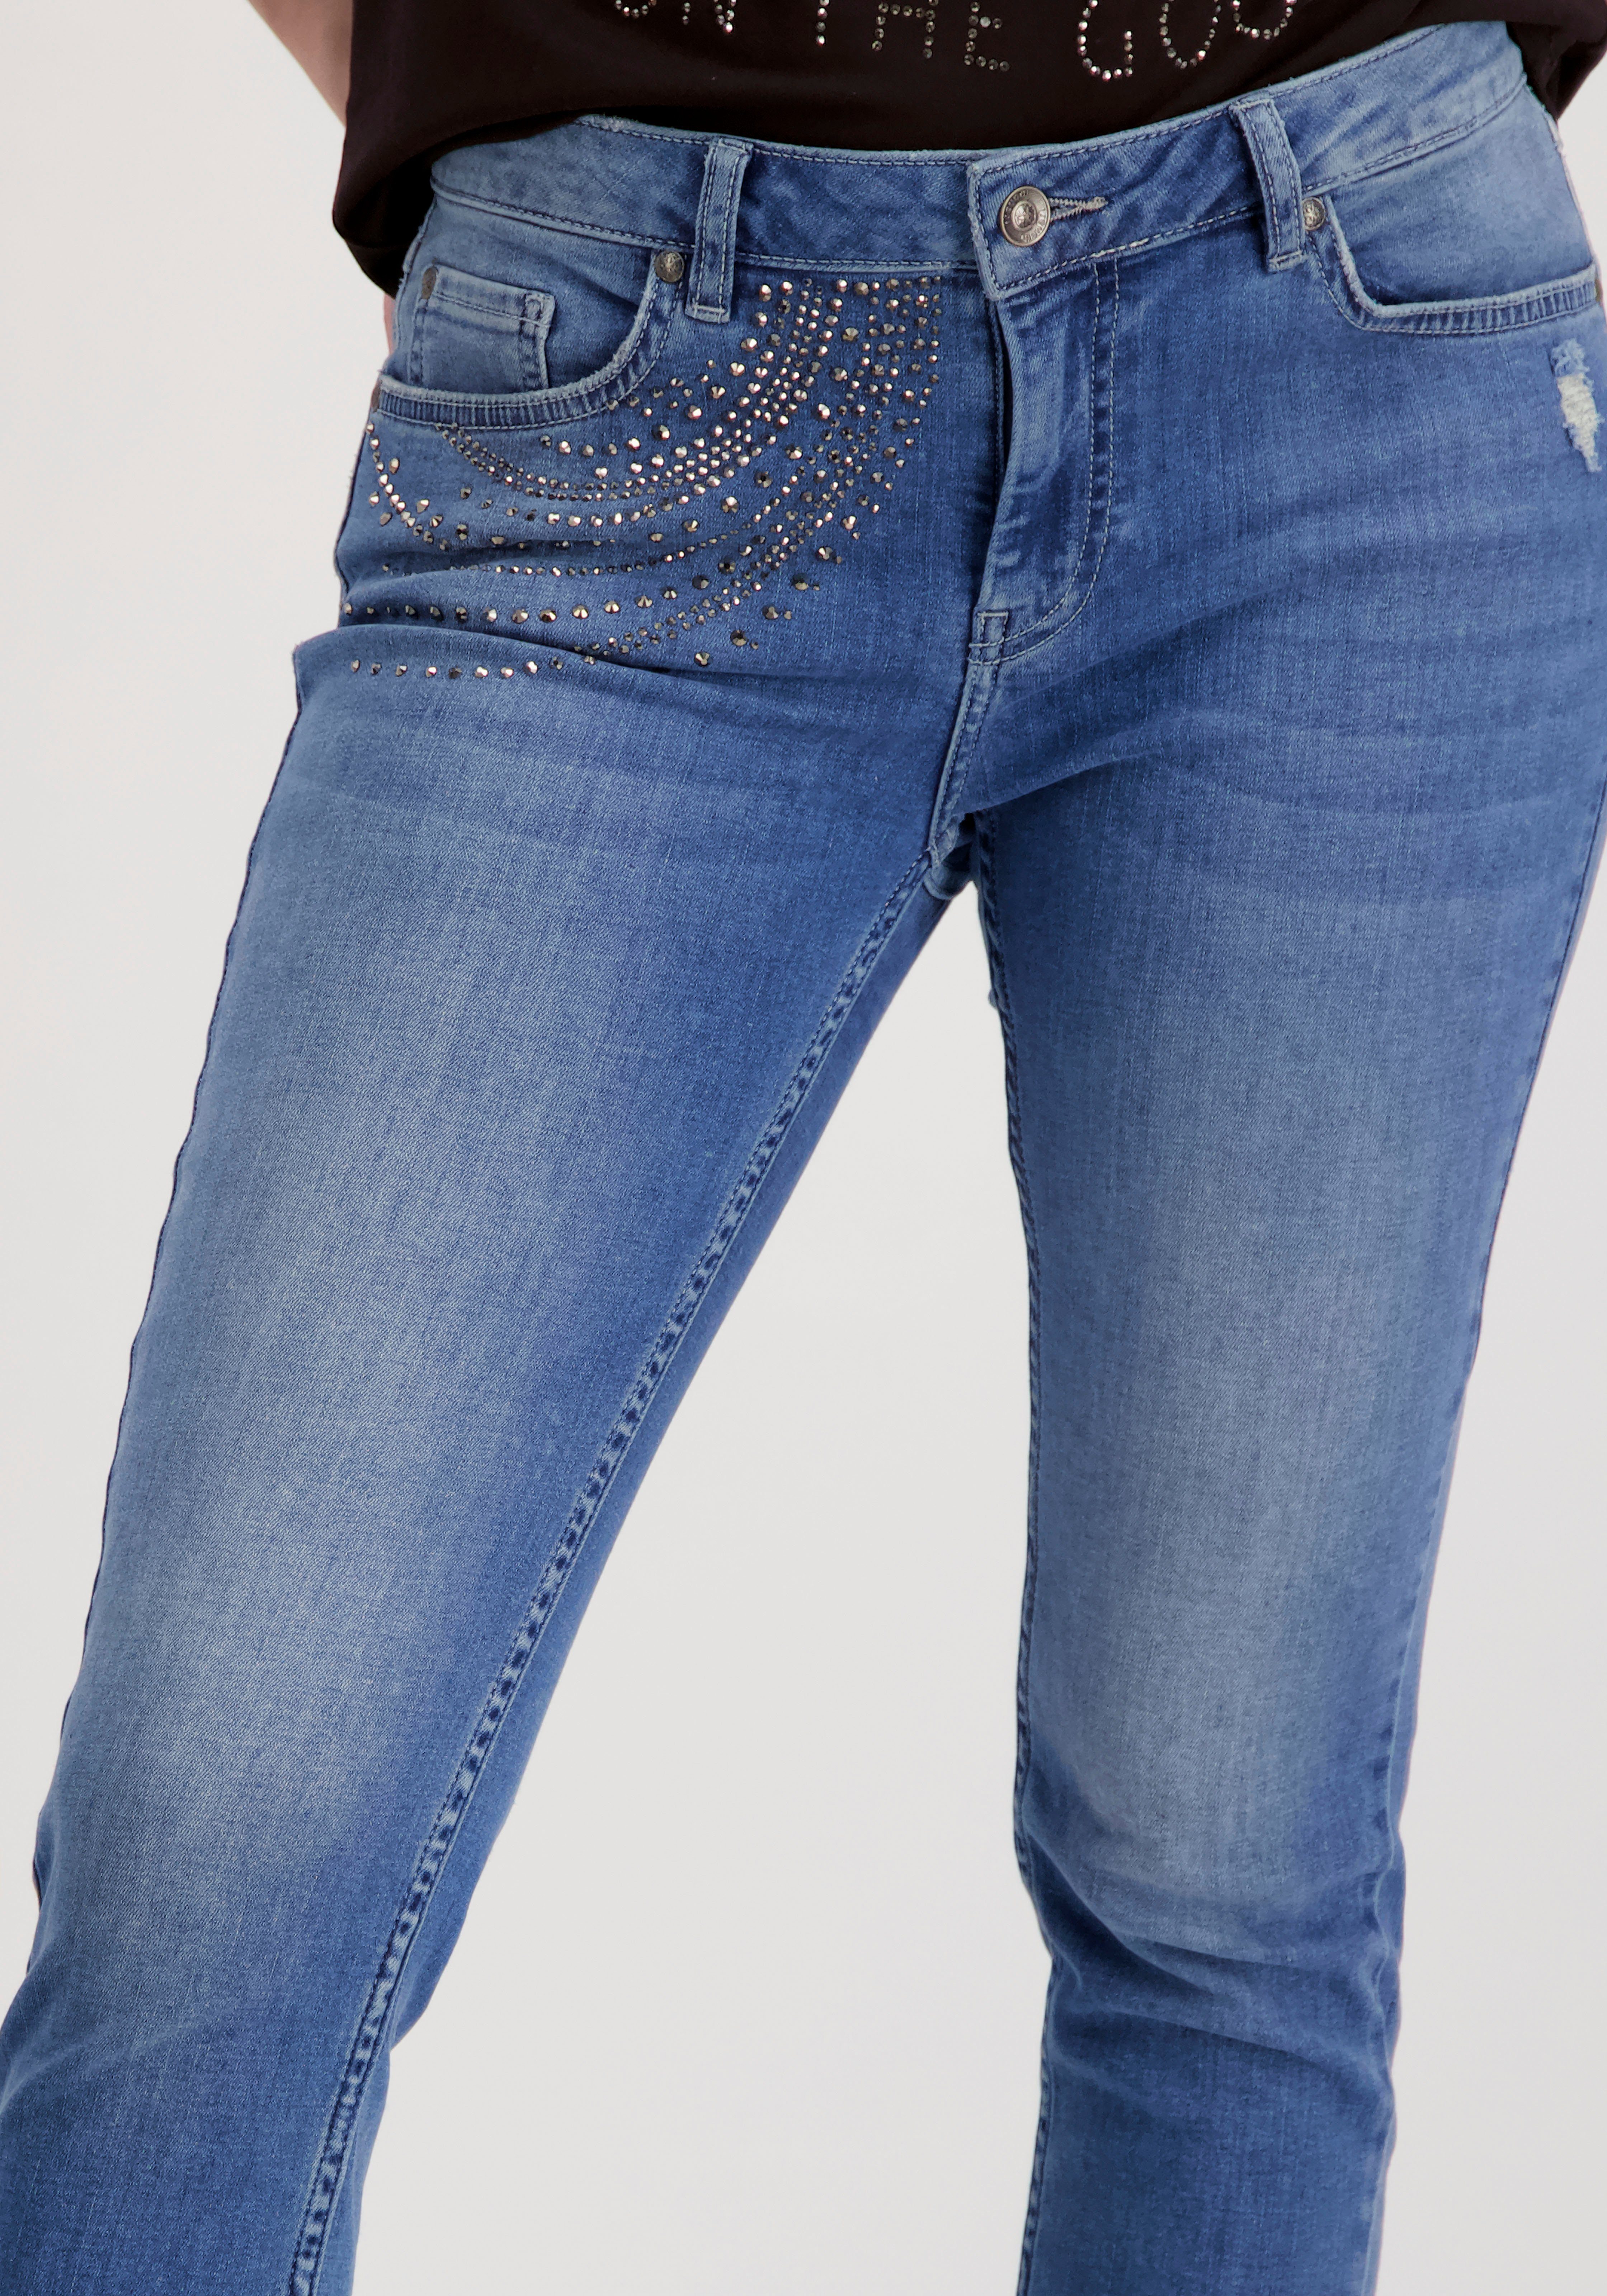 Monari 7/8-Jeans mit Fransensaum und Glitzersteinchen online kaufen | OTTO